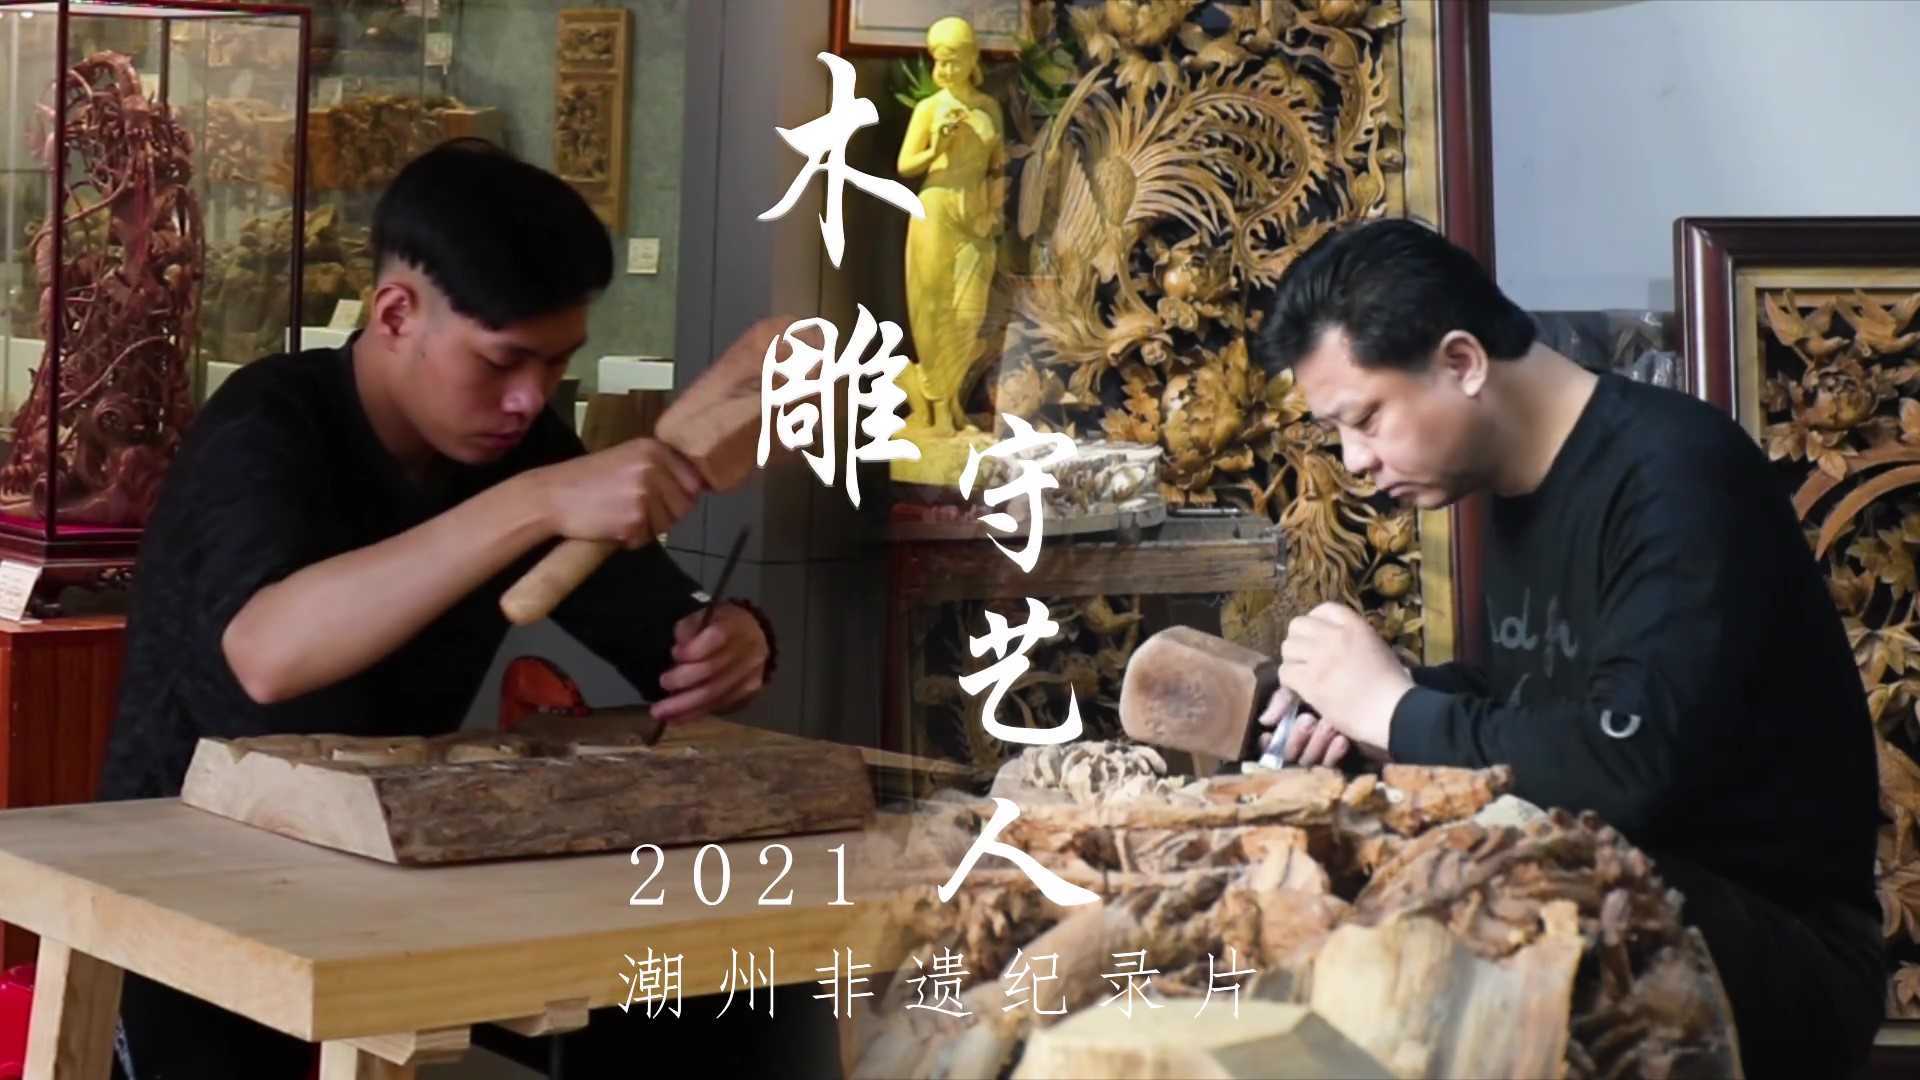 潮州非遗纪录片《木雕守艺人》